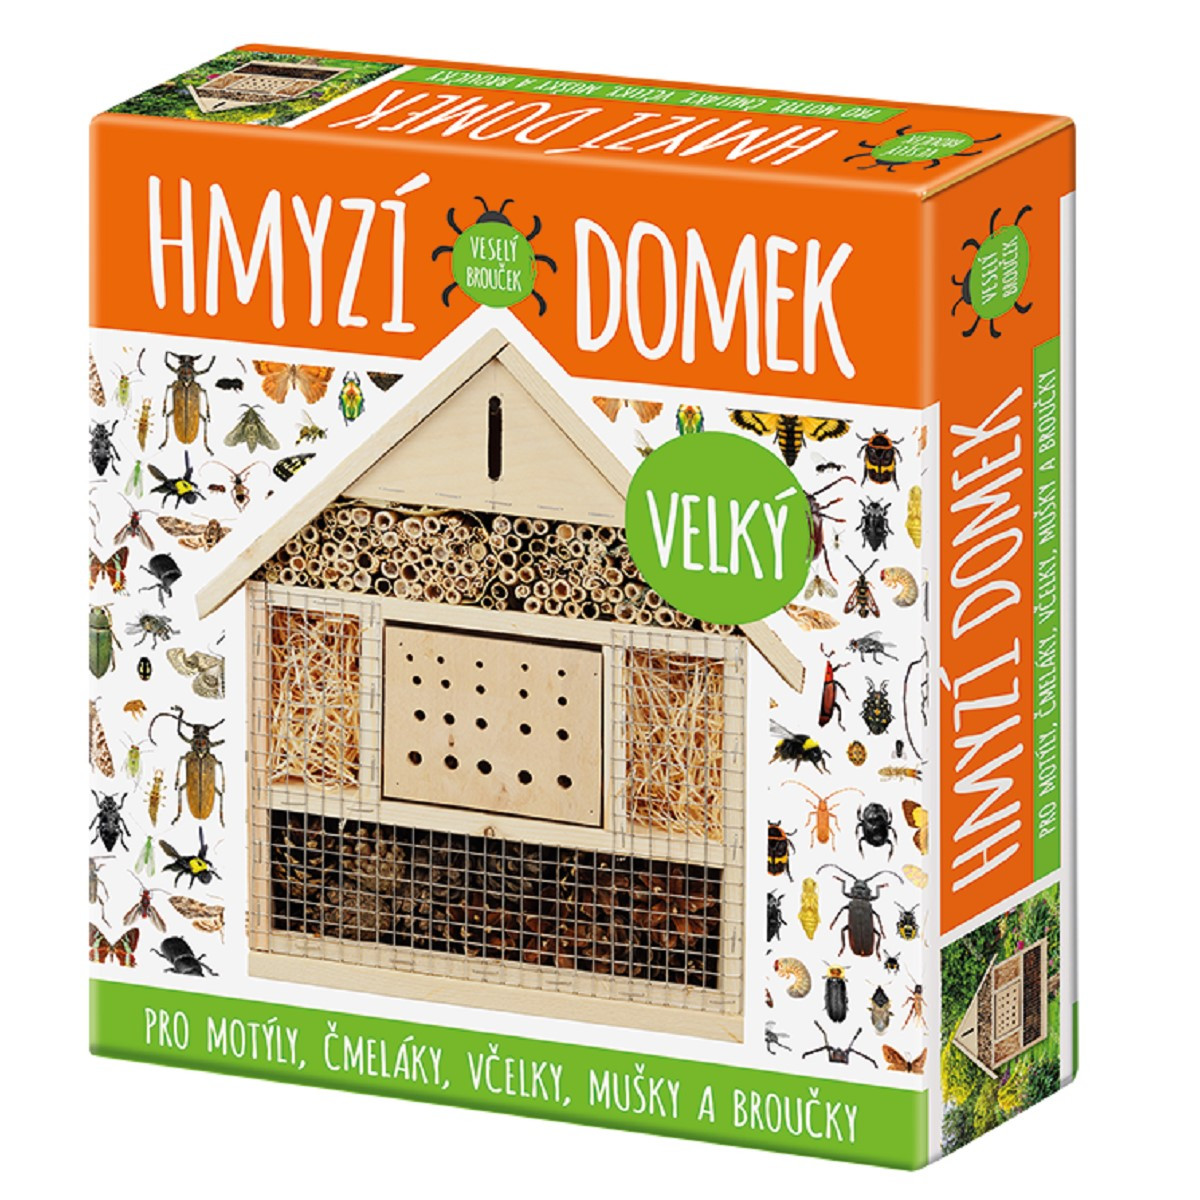 Hmyzí domek velký - domek pro motýly, čmeláky, včely, mušky a brouky - 1 ks